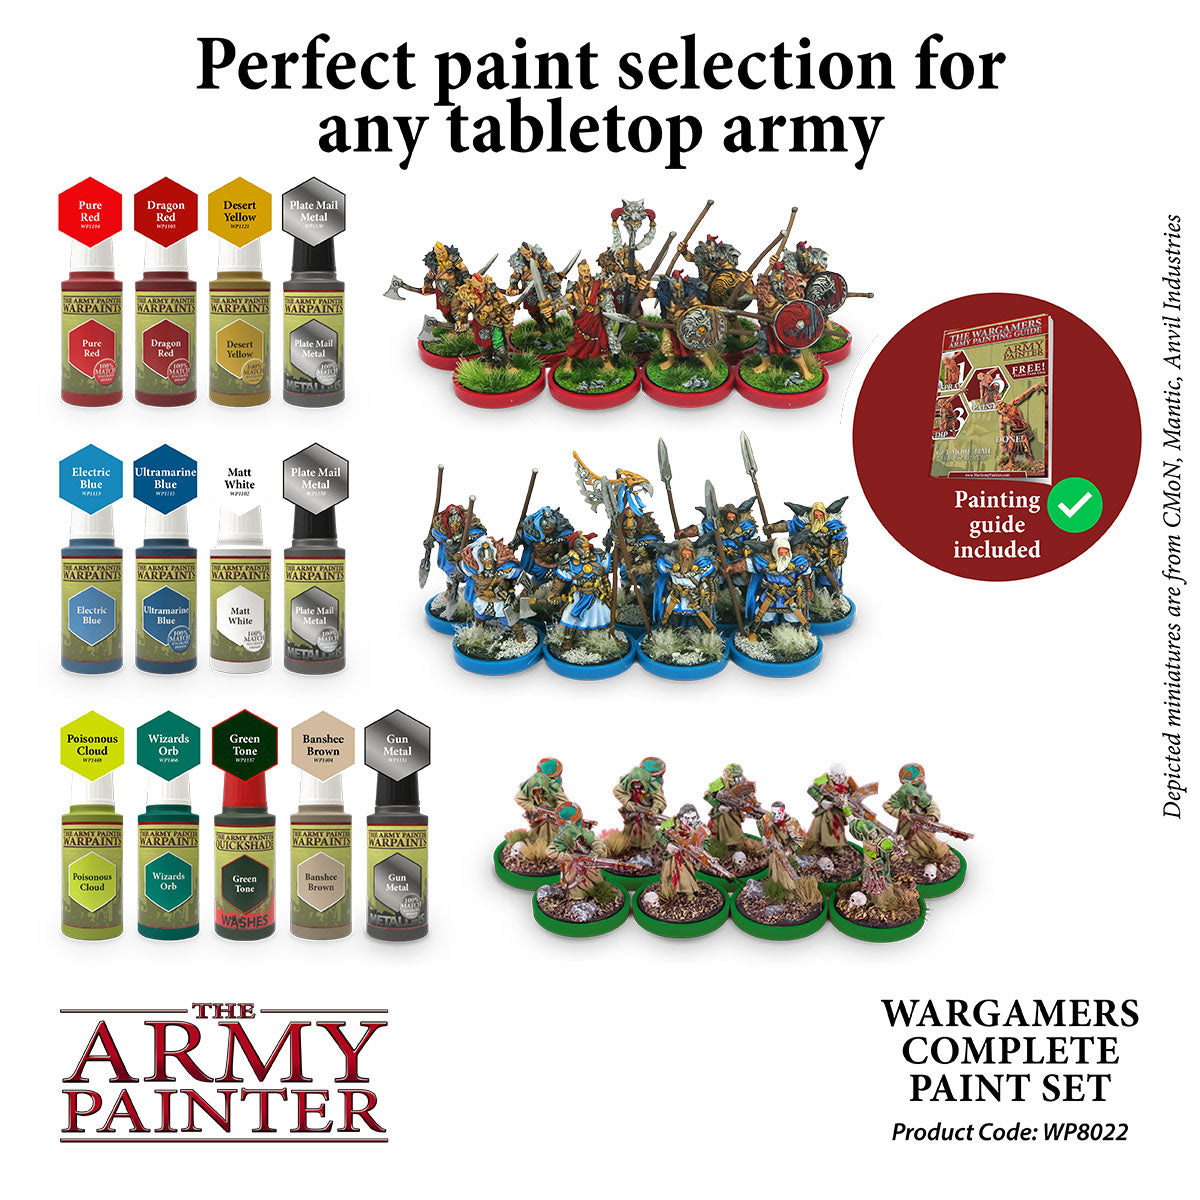 Warpaints: Complete Paint Set